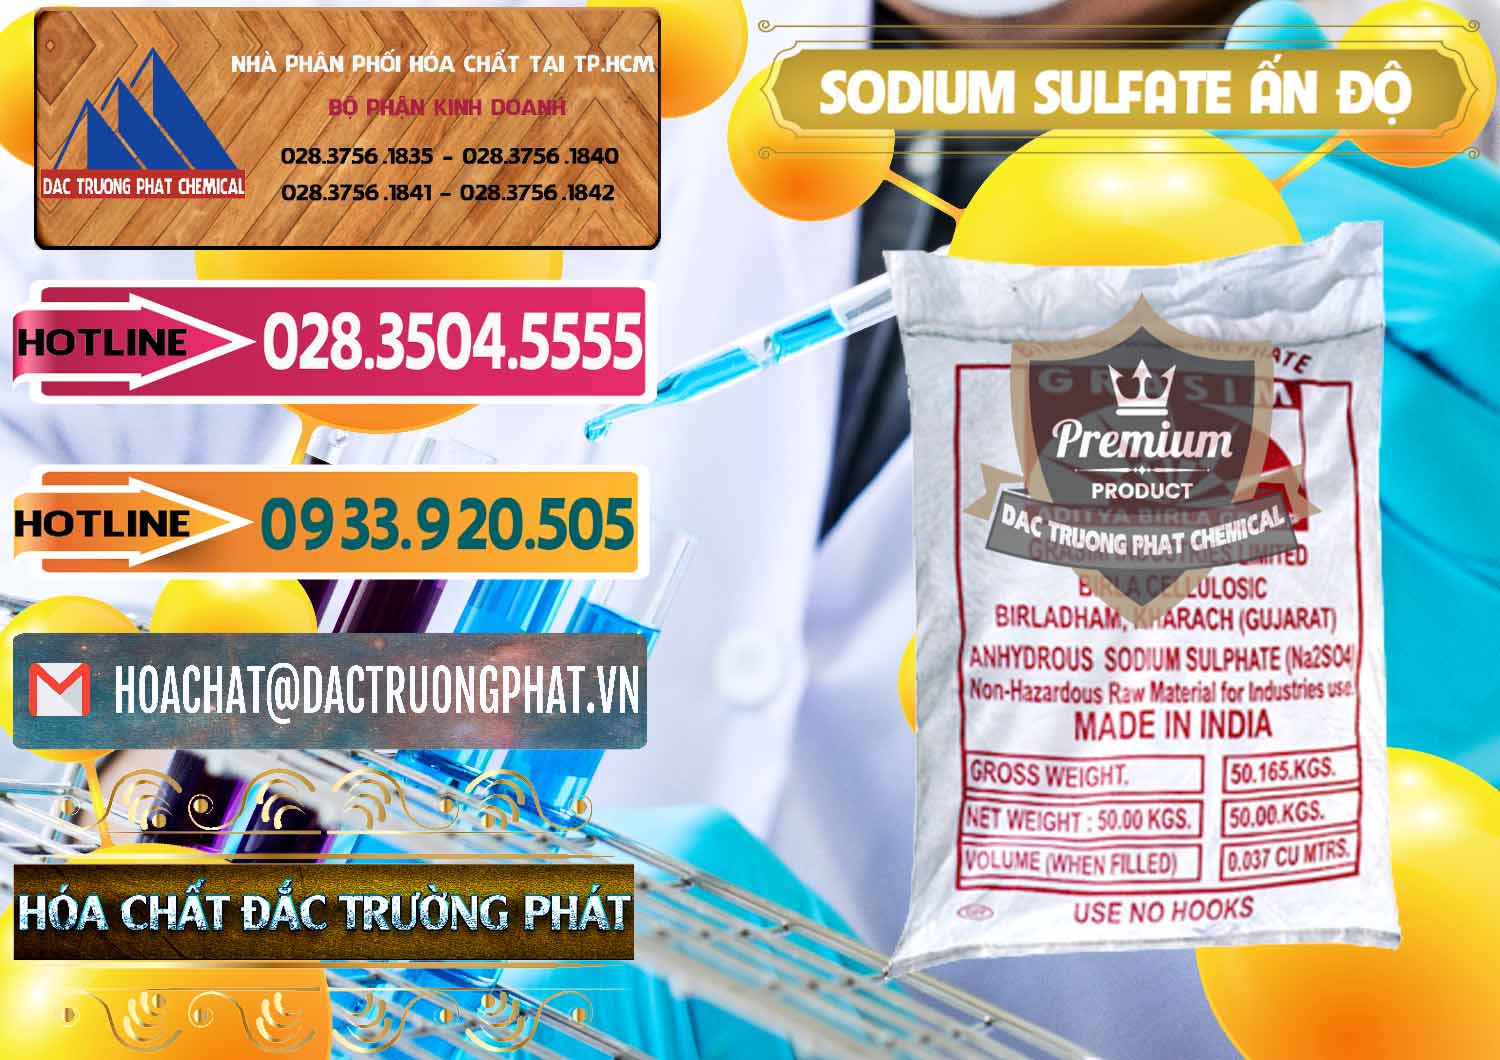 Công ty bán & cung cấp Sodium Sulphate - Muối Sunfat Na2SO4 Aditya Birla Grasim Ấn Độ India - 0462 - Nơi chuyên cung ứng & phân phối hóa chất tại TP.HCM - dactruongphat.vn